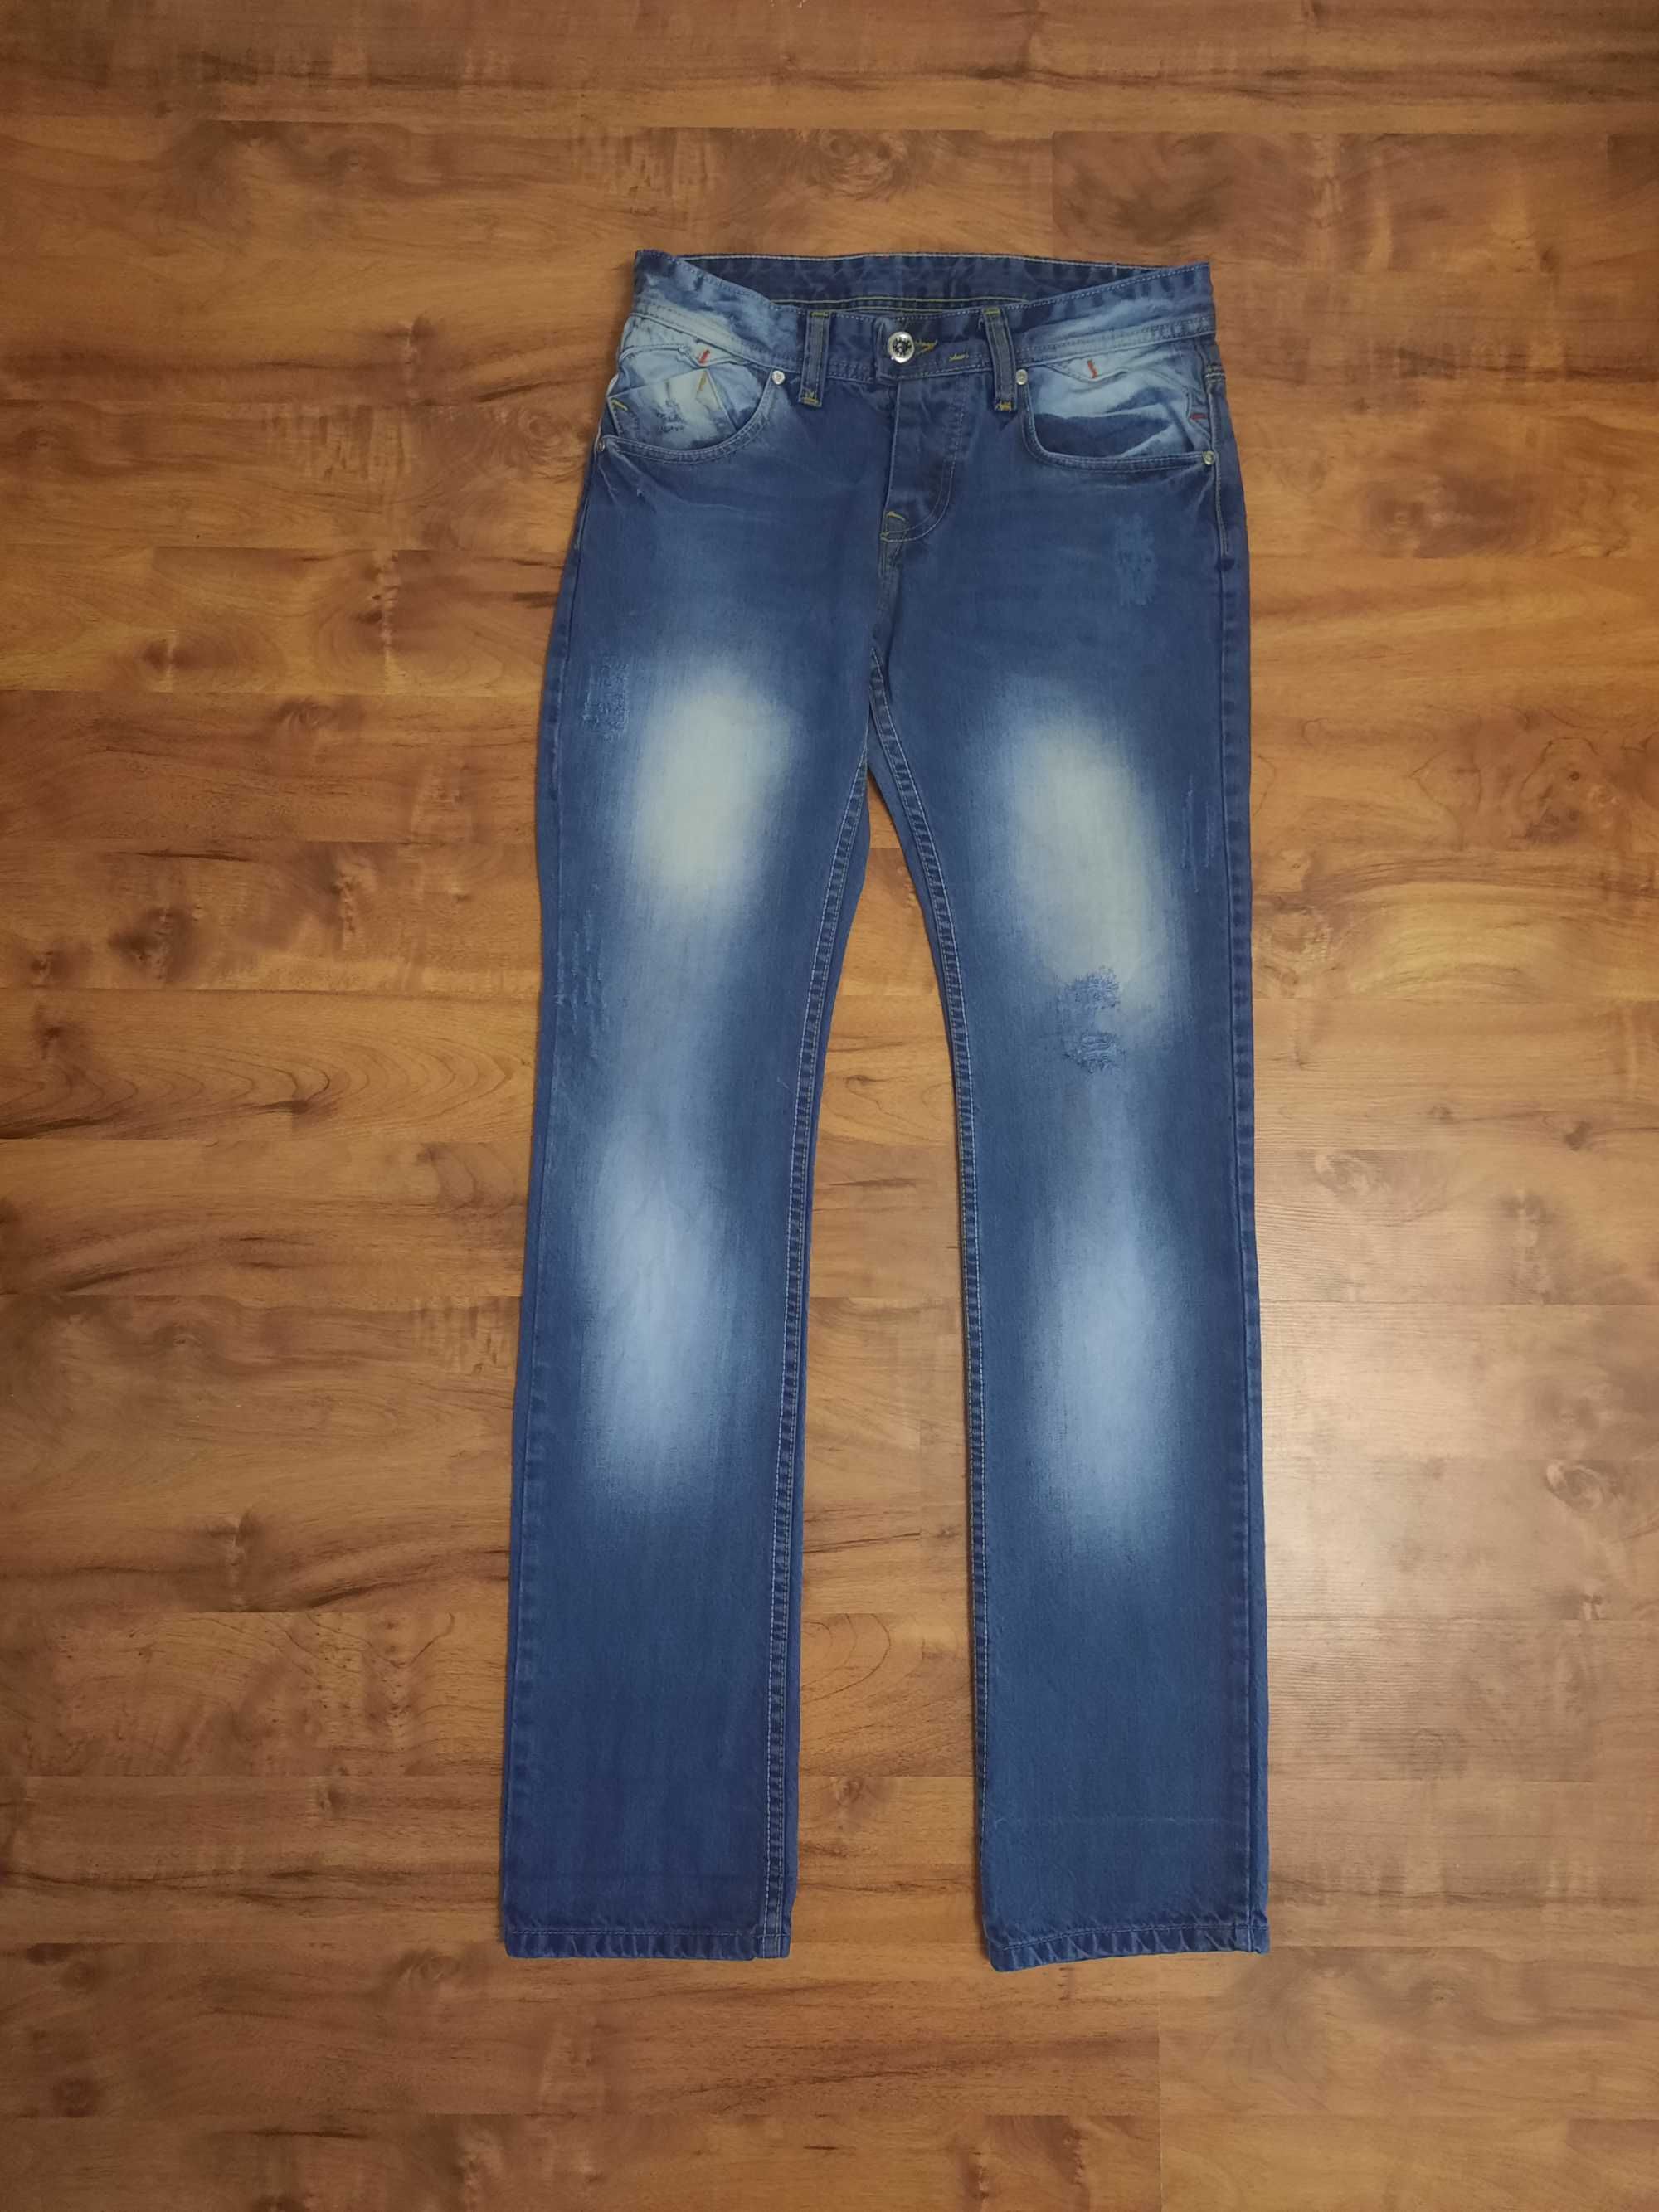 Jeansy, spodnie jeansowe ManJeans rozmiar 32, orientacyjnie M